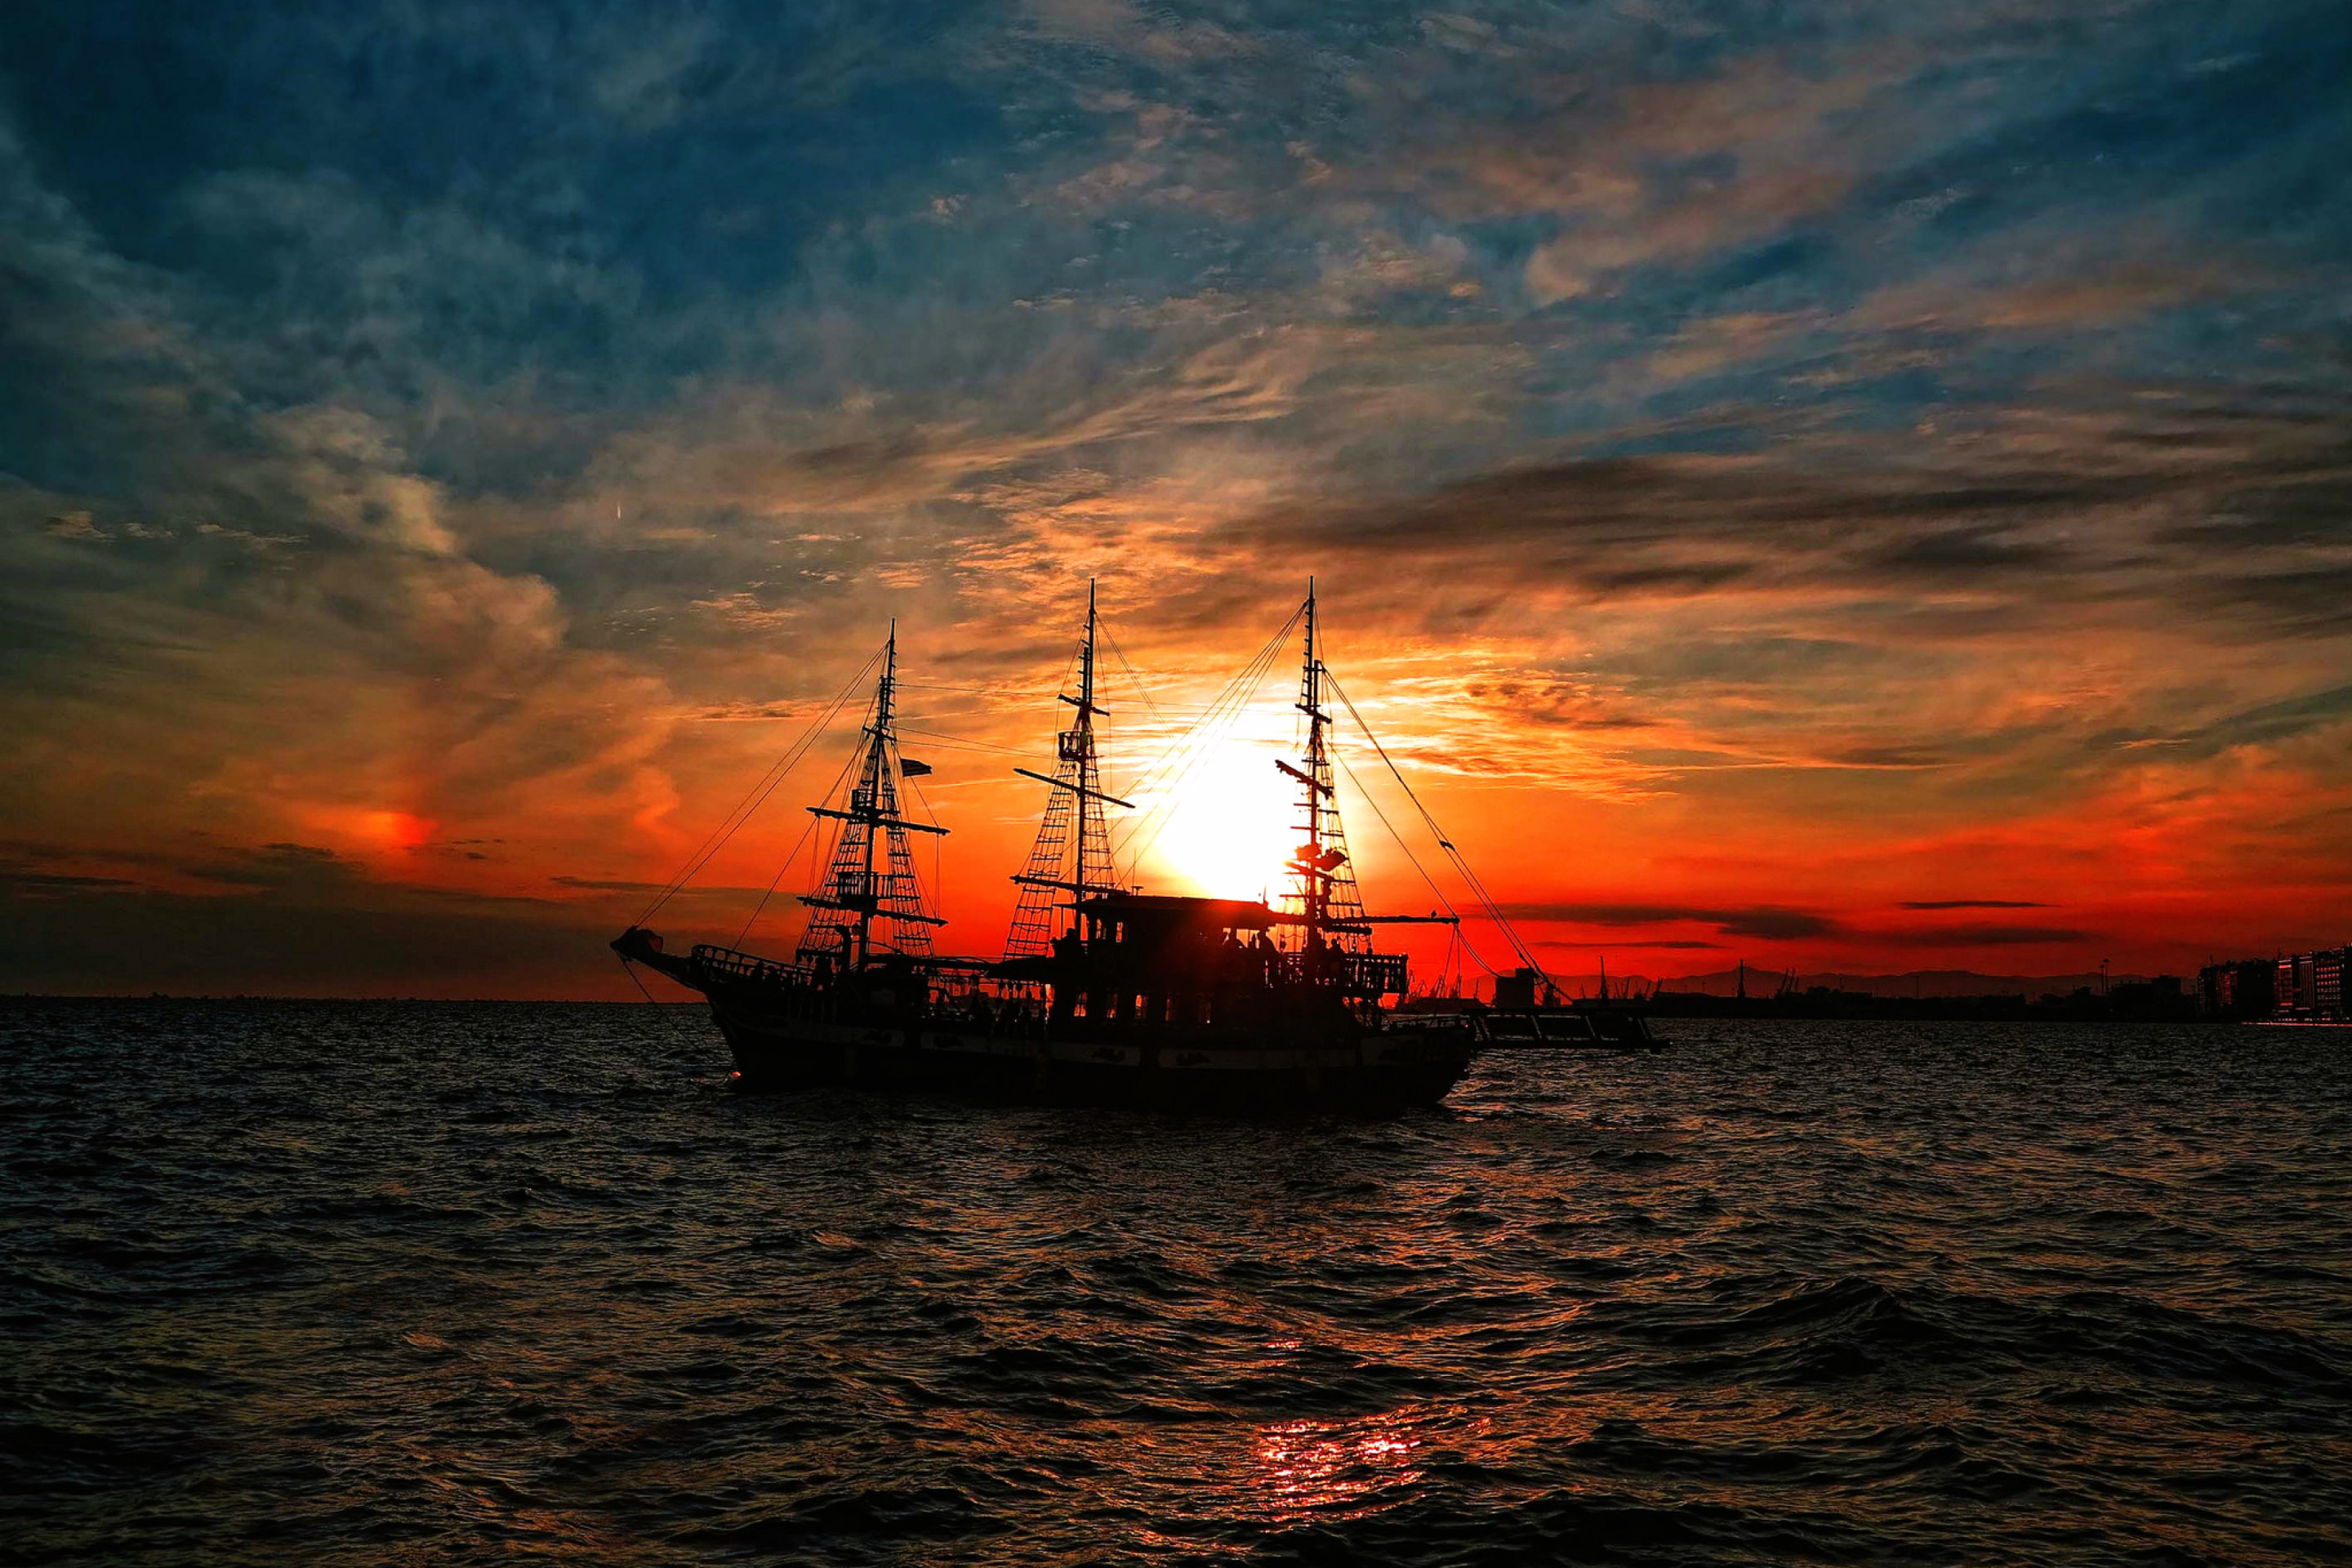 Обои Ship in sunset 2880x1920